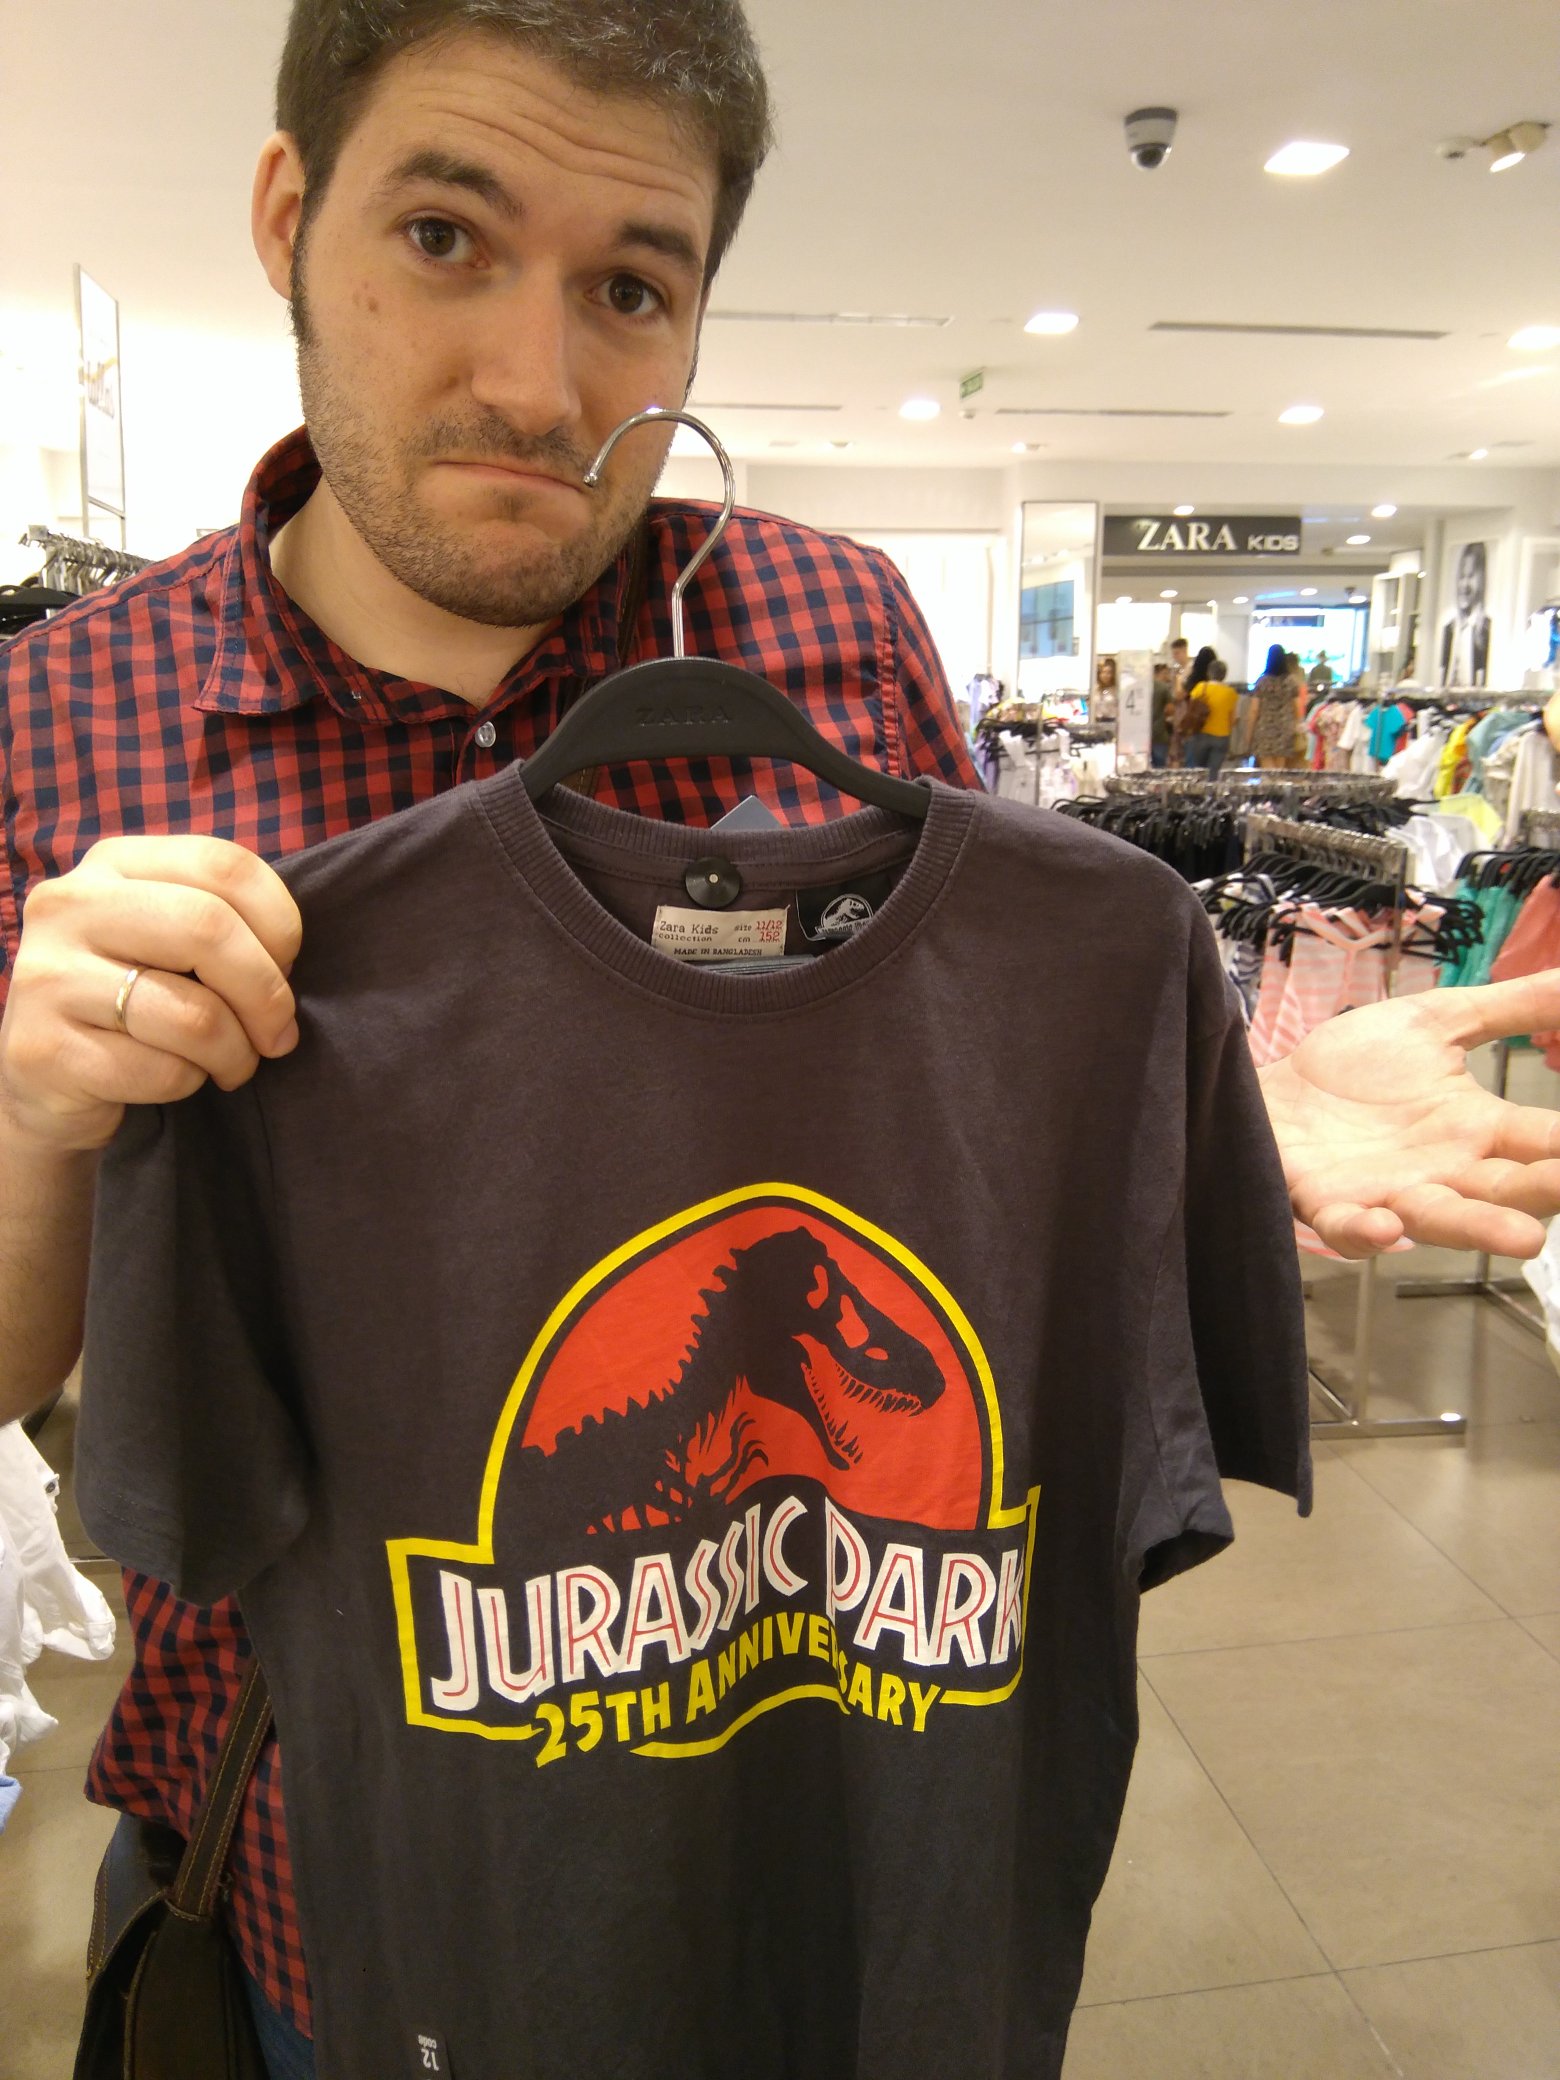 ZARA på Twitter: "@Jon_Valera @Dino_Busters @DinopolisTeruel @Hispanosaurus @YofuiaEGB @ColectivoCroma @Museojurasico @ILopezMunoz @El_Pakozoico @pakozoic @JurassicWorld_4 Gracias por tu respuesta, Jon. Por el momento, la camiseta con el logo que ...